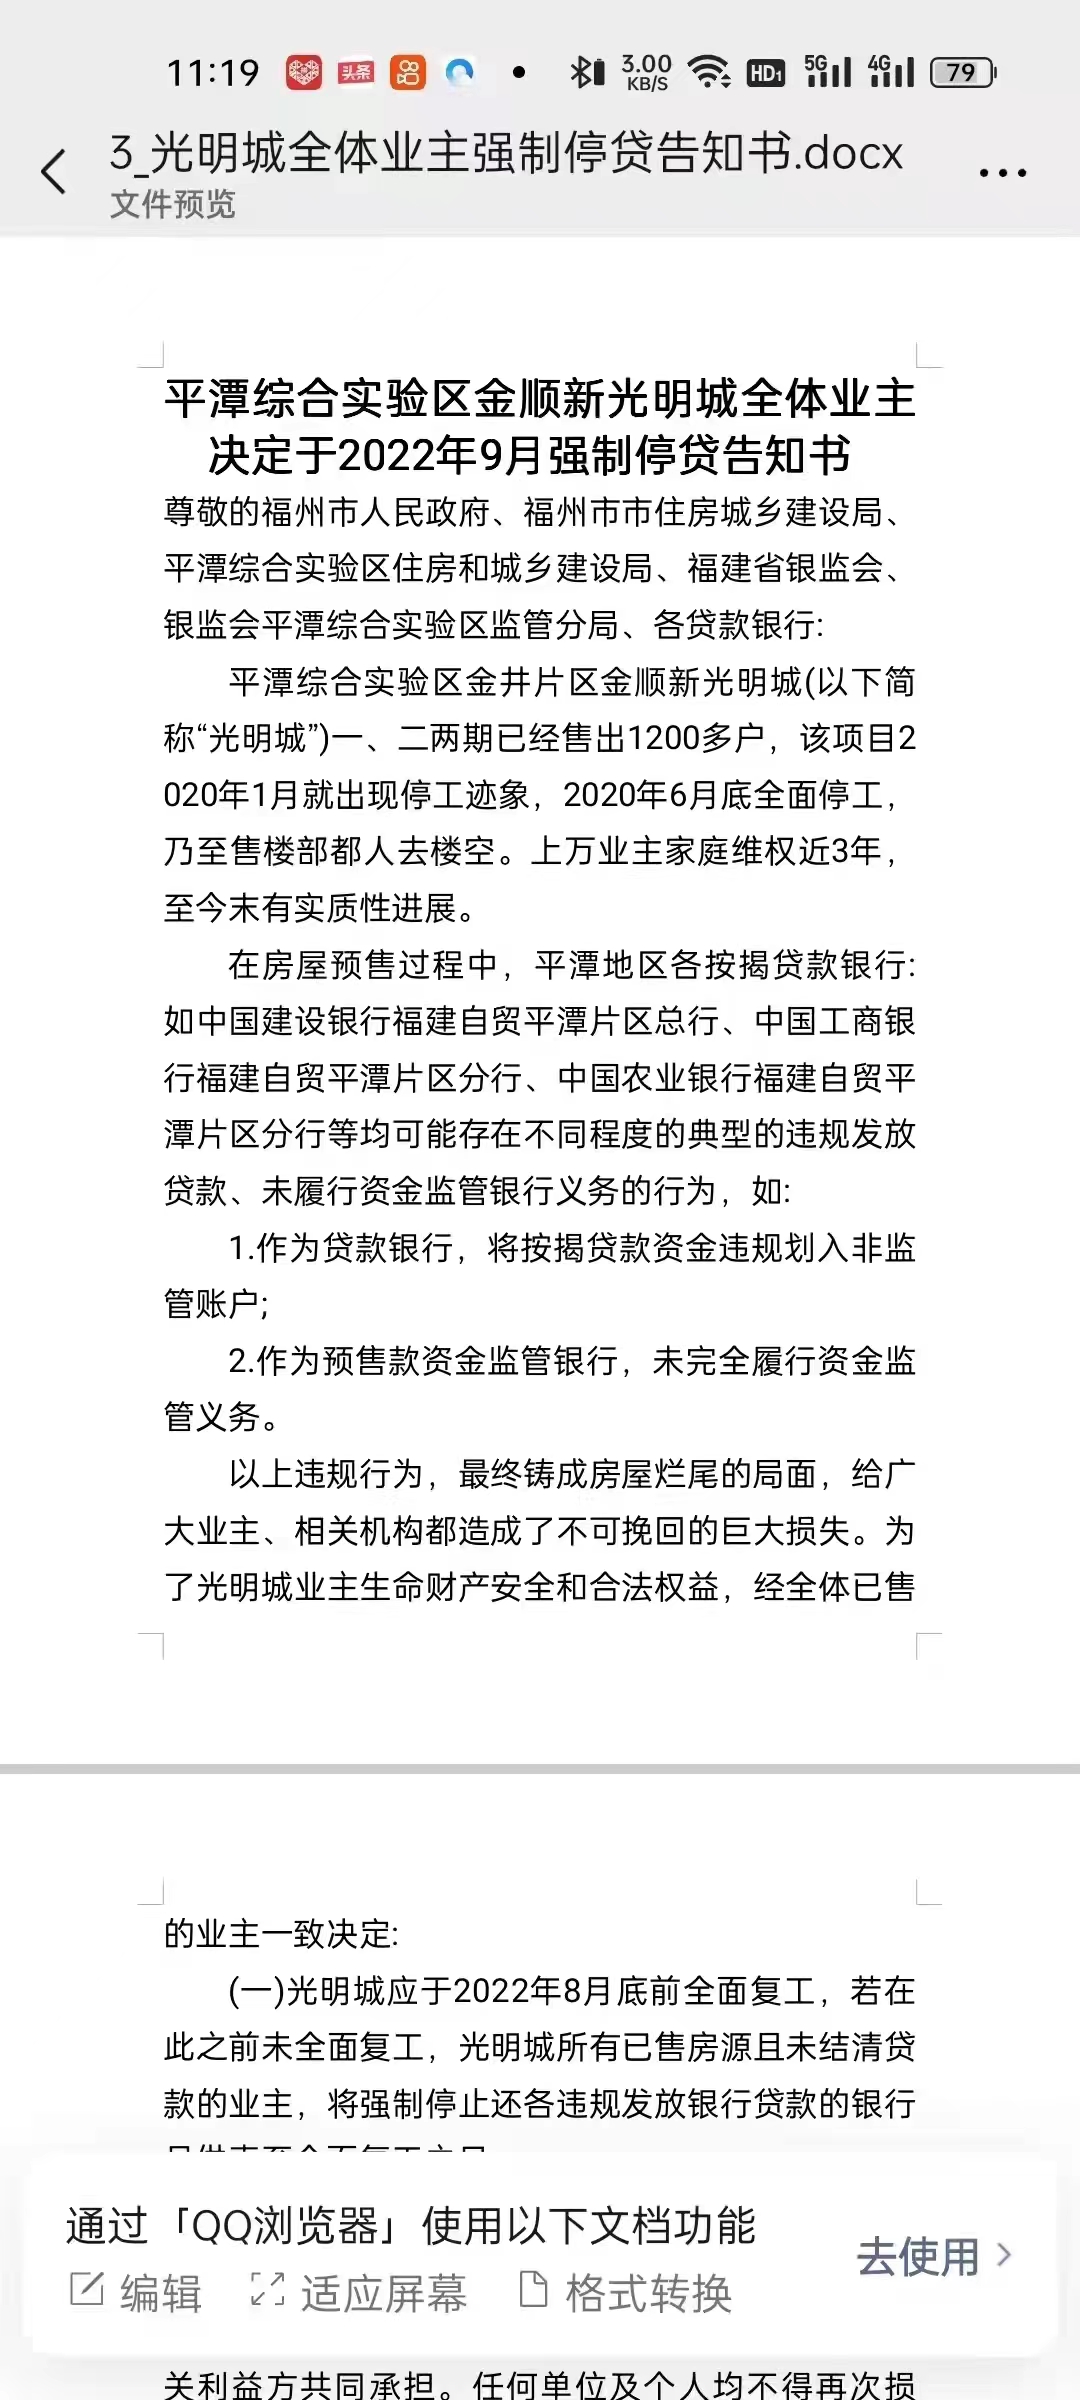 平潭综合实验区金顺新光明城全体业主决定于2022年9月强制停贷告知书.jpg